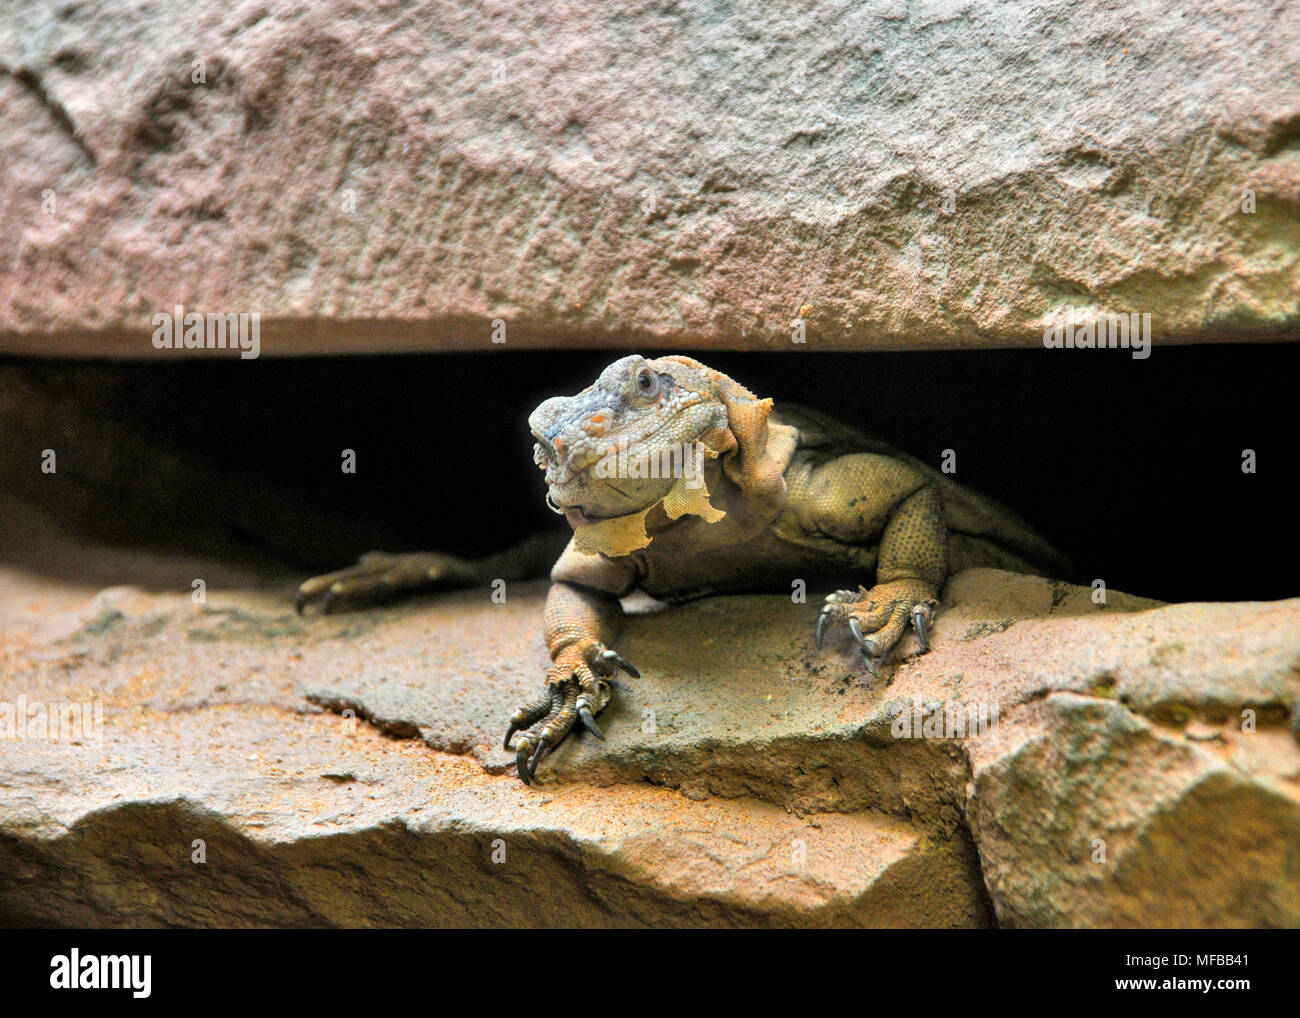 Reptil lagarto en proceso de arrojar su antigua piel Foto de stock